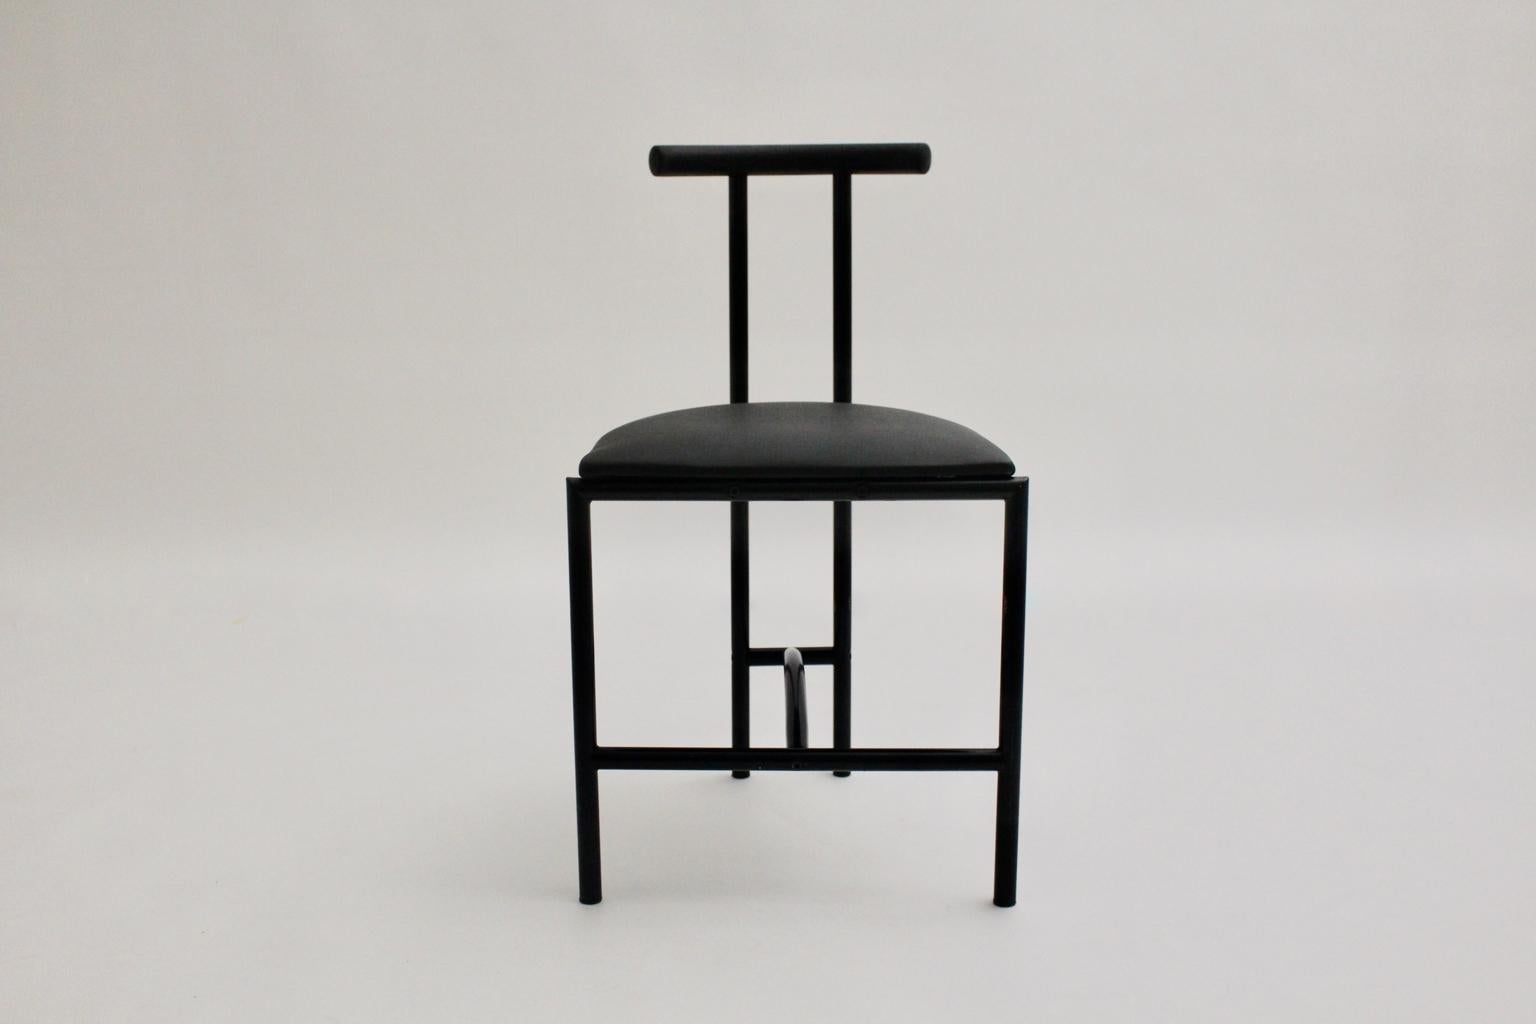 La chaise vintage moderne a été conçue par Rodney Kinsman 1985 Royaume-Uni et est faite de tube d'acier laqué noir et d'un siège recouvert de faux cuir noir.
Très bon état vintage
Mesures approximatives :
Largeur 43,5 cm
Profondeur 41 cm
Hauteur